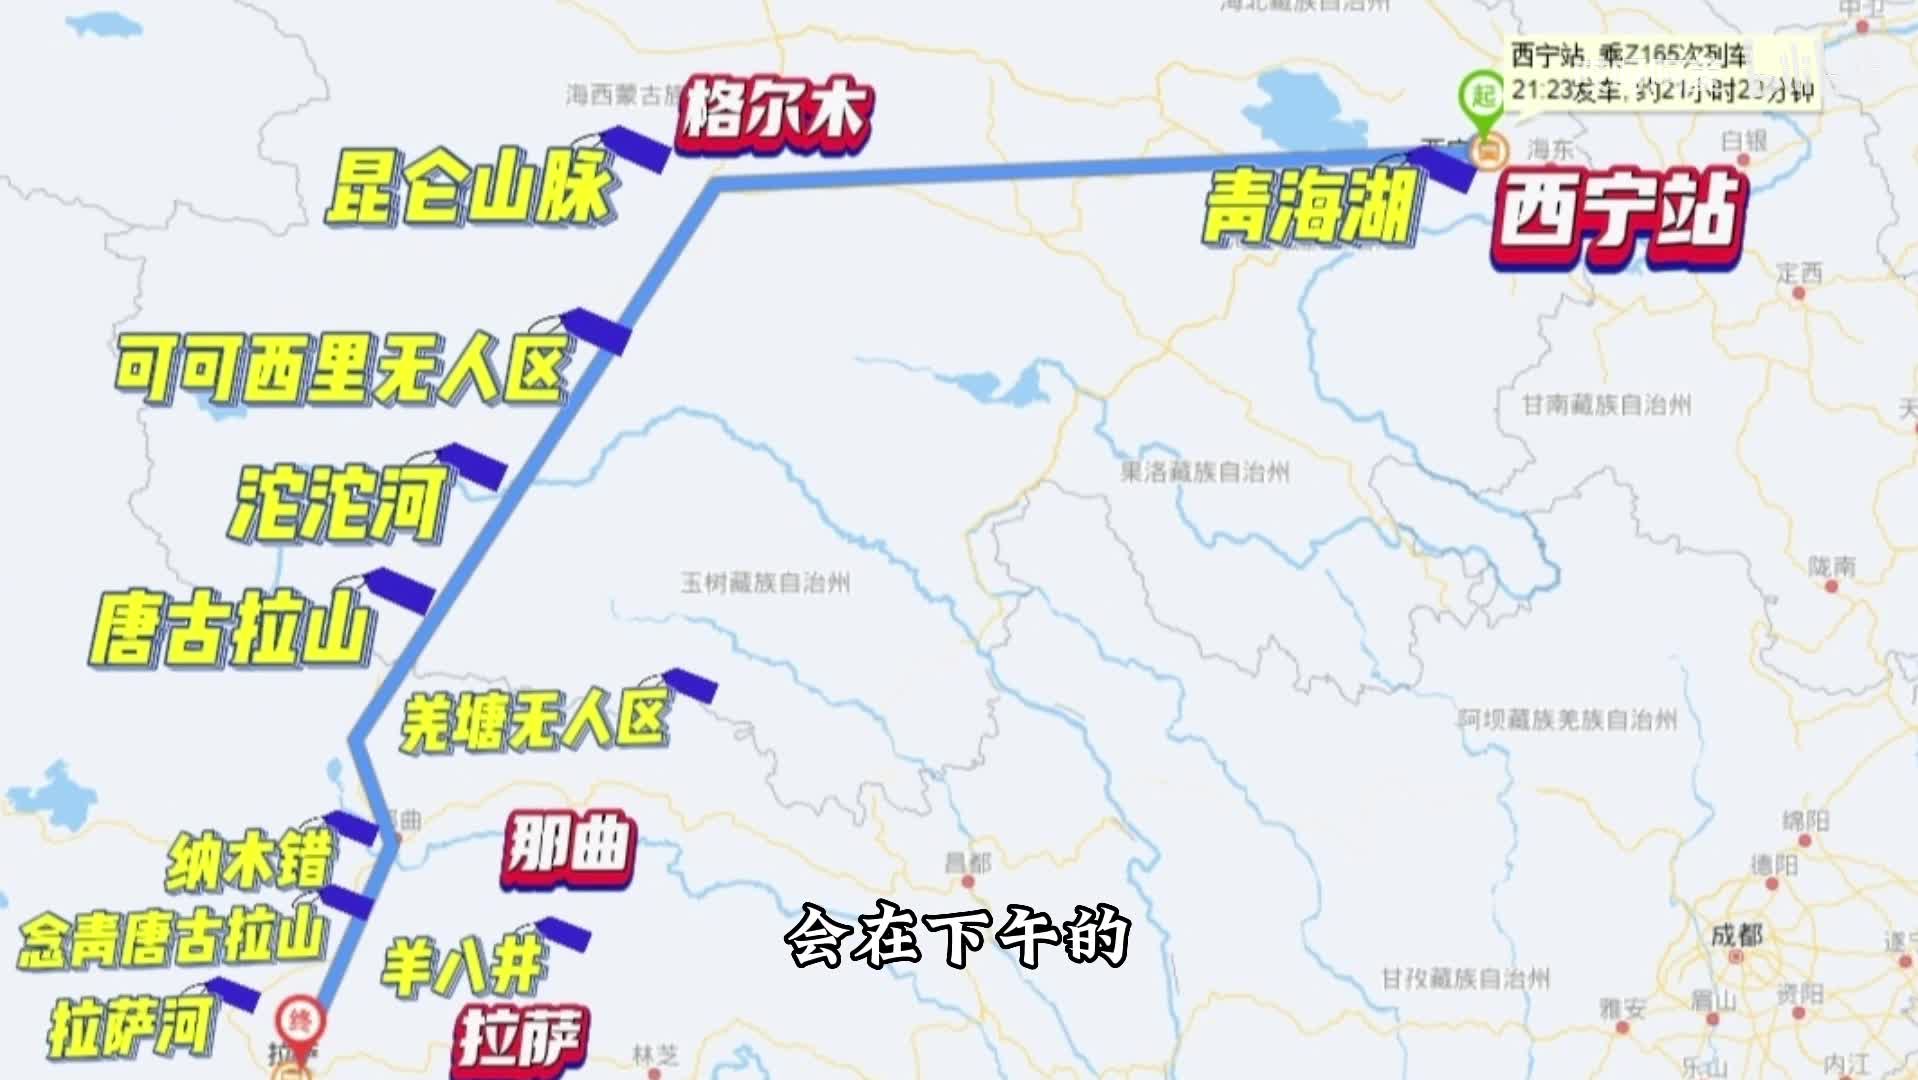 复兴号开进西藏 拉萨至林芝铁路开通运营 - 中国日报网